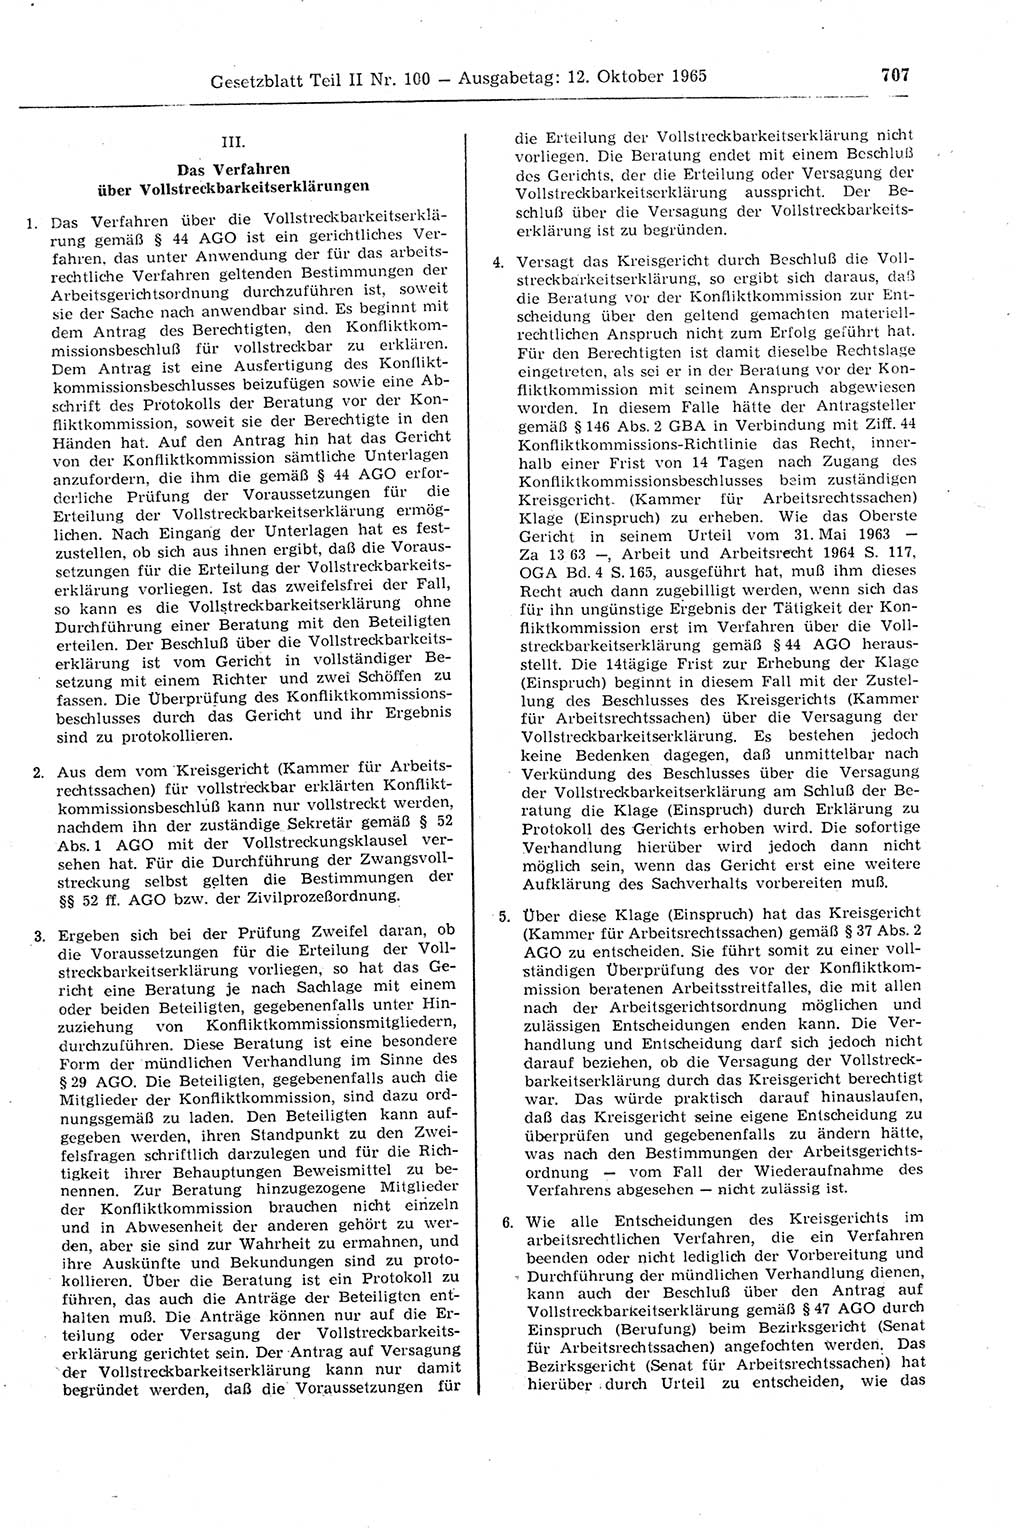 Gesetzblatt (GBl.) der Deutschen Demokratischen Republik (DDR) Teil ⅠⅠ 1965, Seite 707 (GBl. DDR ⅠⅠ 1965, S. 707)